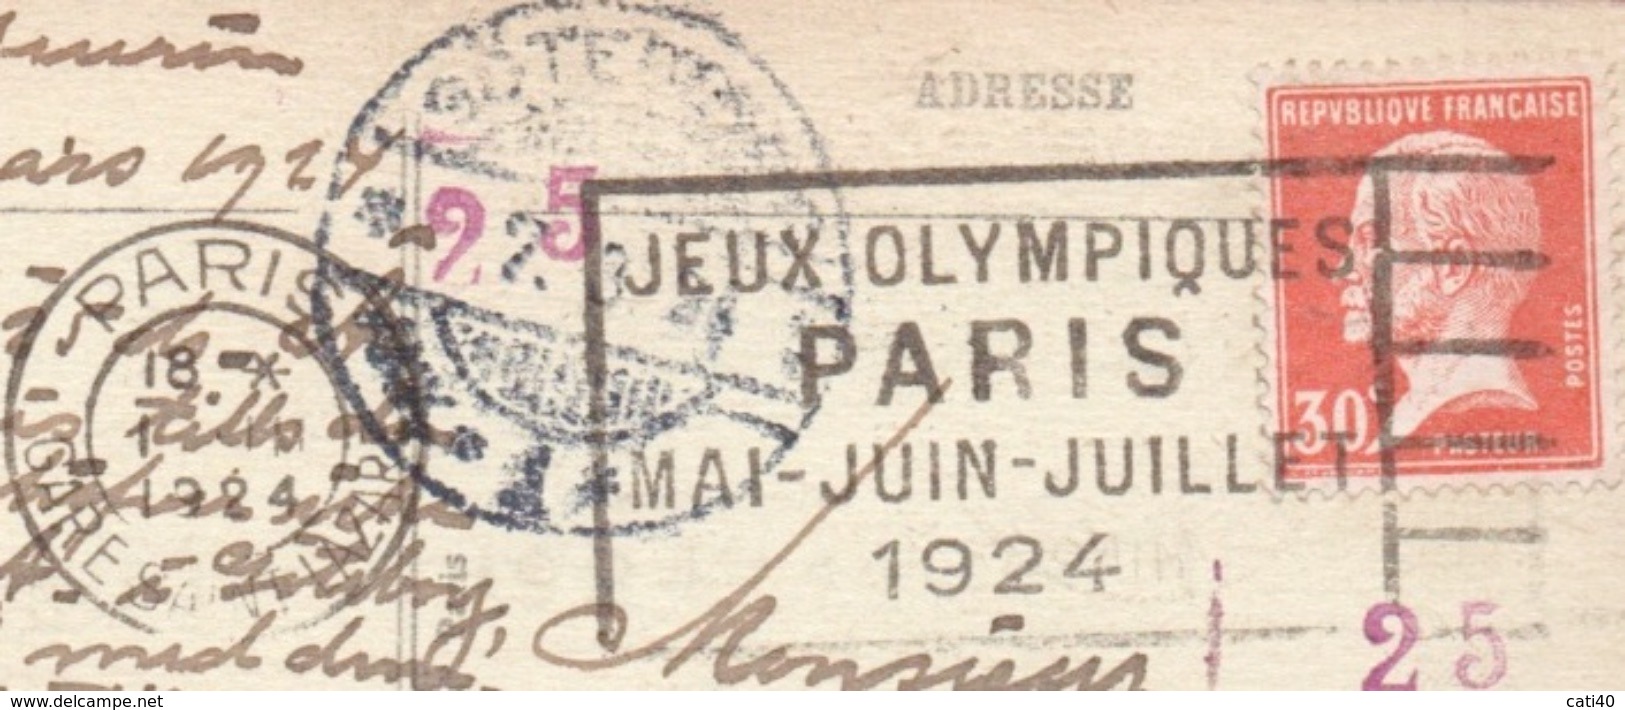 OLIMPIADI  PARIS 1924 ANNULLO PROPAGANDA OLIMPICA SU CARTOLINA DA PARIS A GOTEBORG IN DATA 1/3/1924 - Estate 1924: Paris